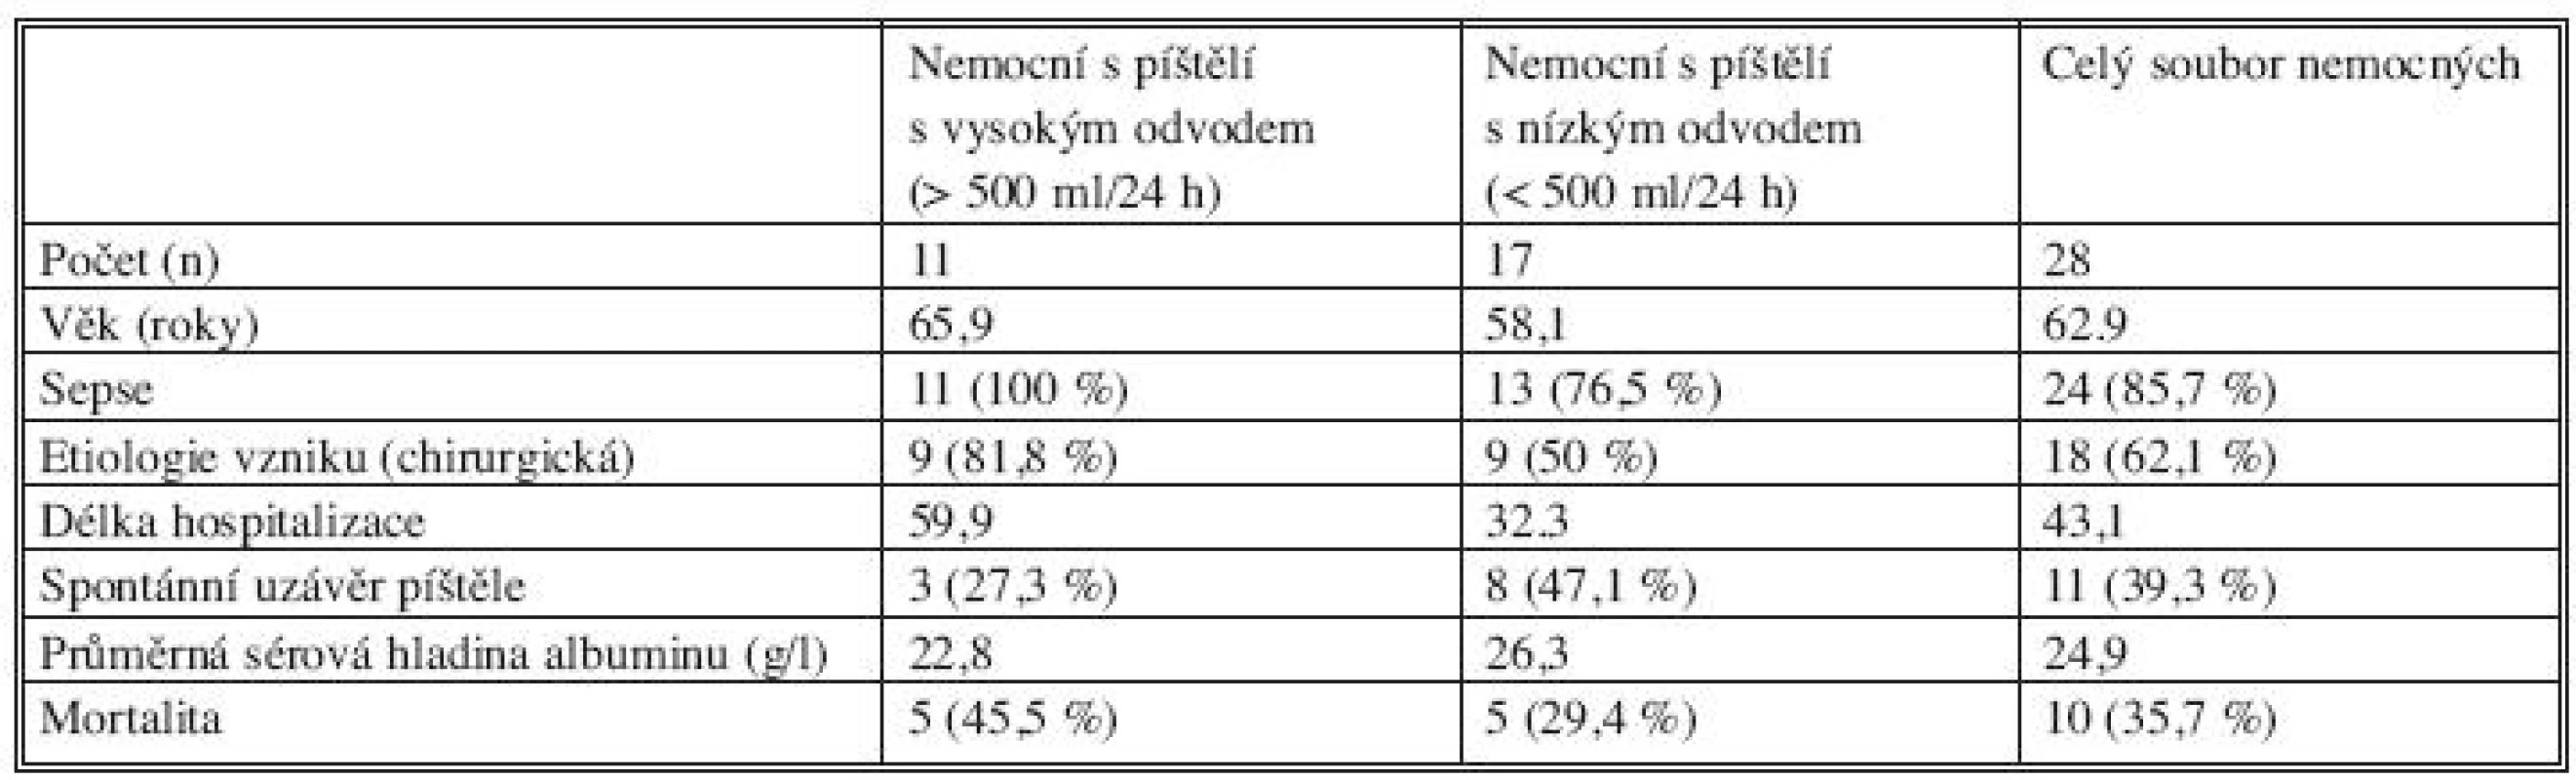 Srovnání patofyziologie píštělí s vysokým a nízkým odvodem
Tab. 3. Comparison of pathophysiology of fistules with high and low secretion